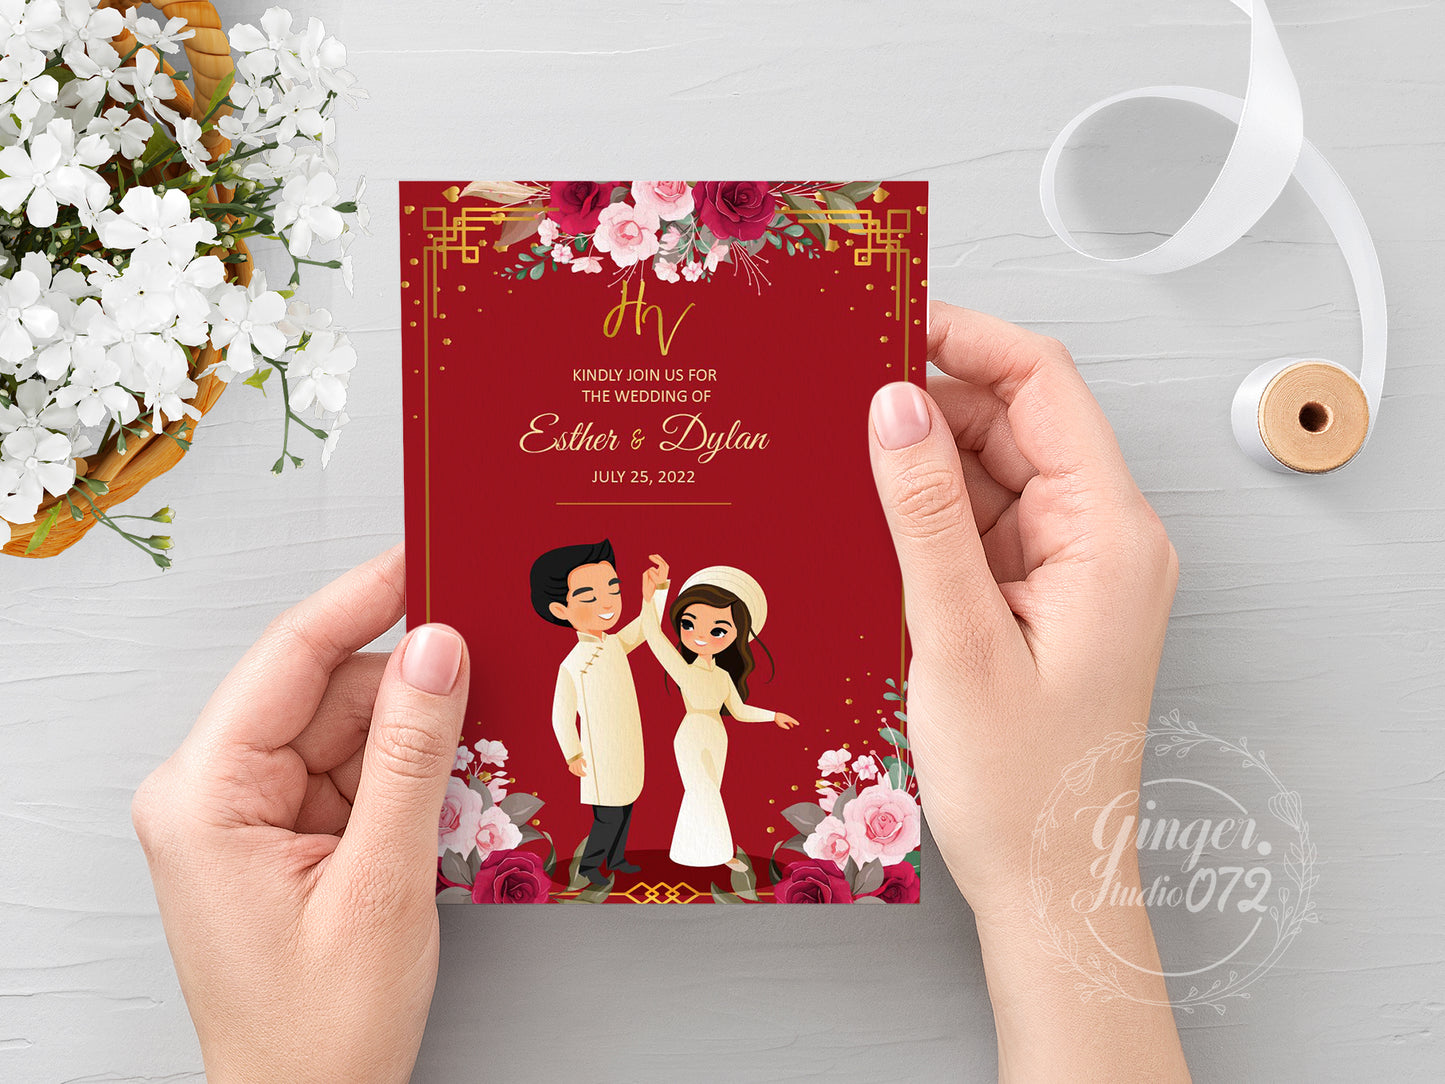 Cute Vietnamese wedding invite, Áo dài theme, Customize Invite Template #cvwl220202